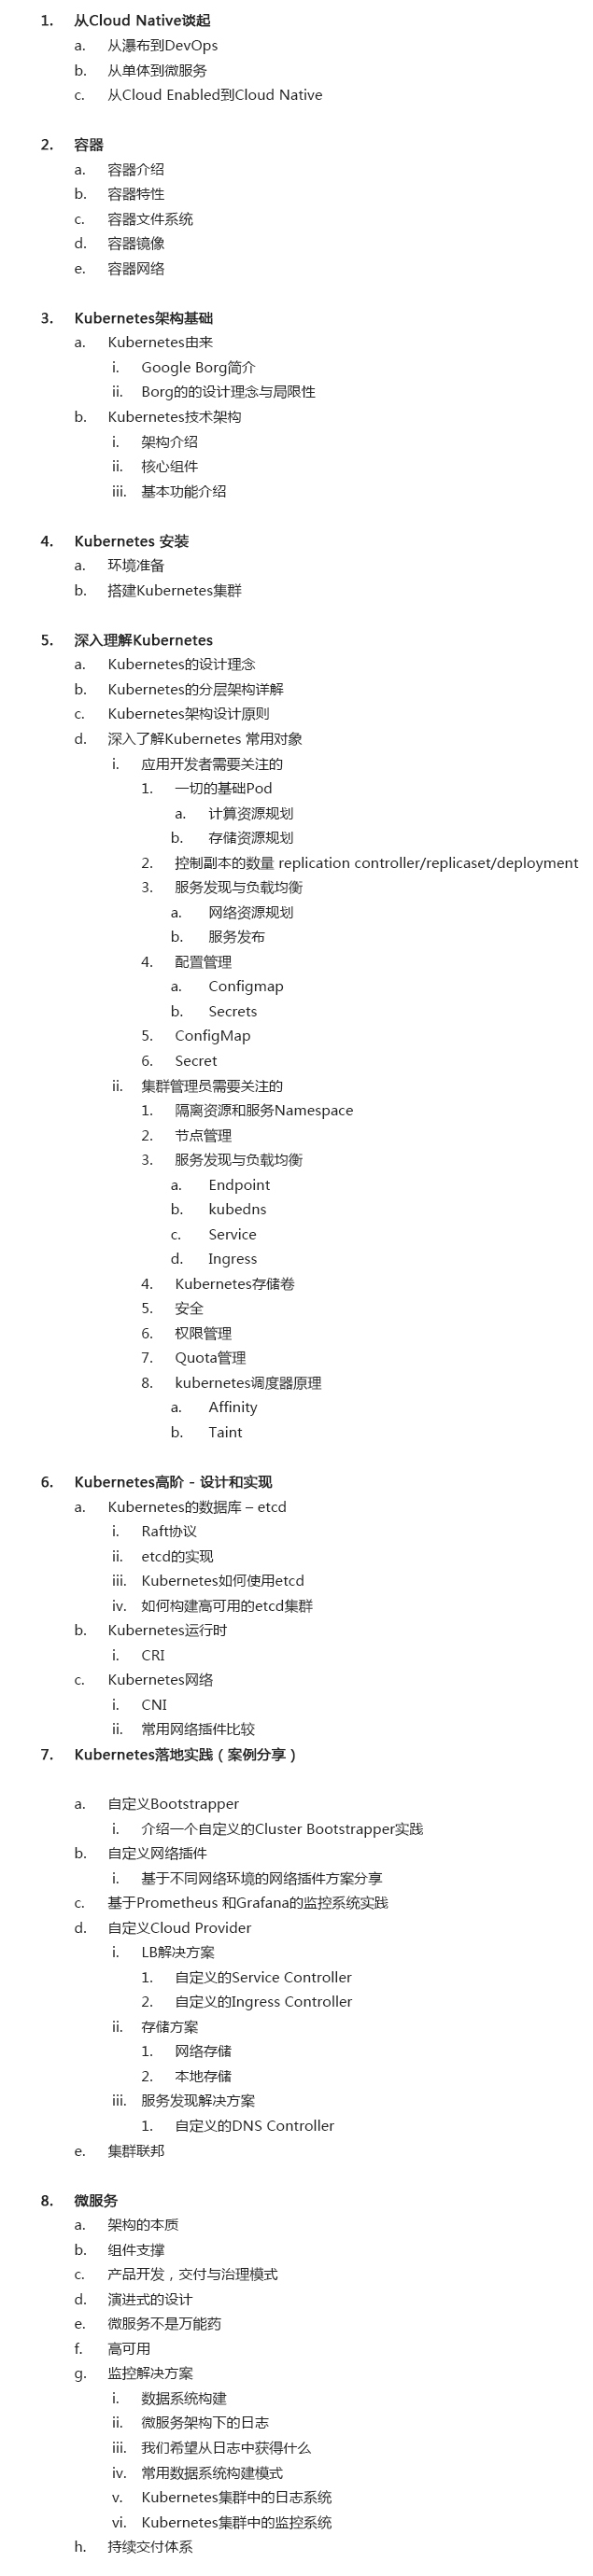 2019基于Kubernetes的DevOps实战培训 | 上海站